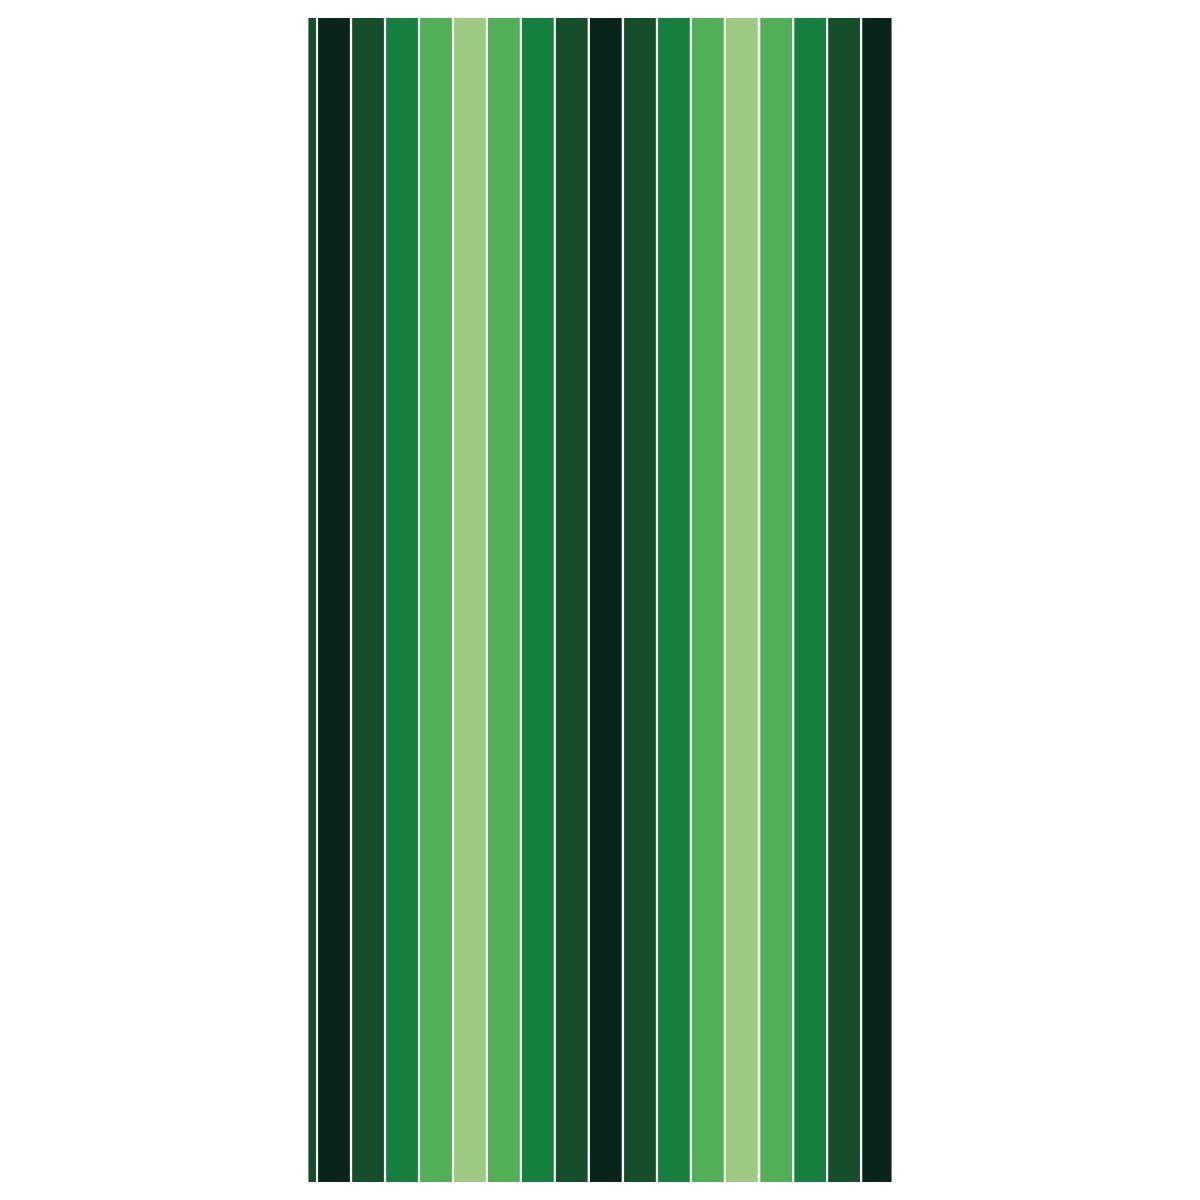 Türtapete Frisches Grün Muster M0090 - Bild 2